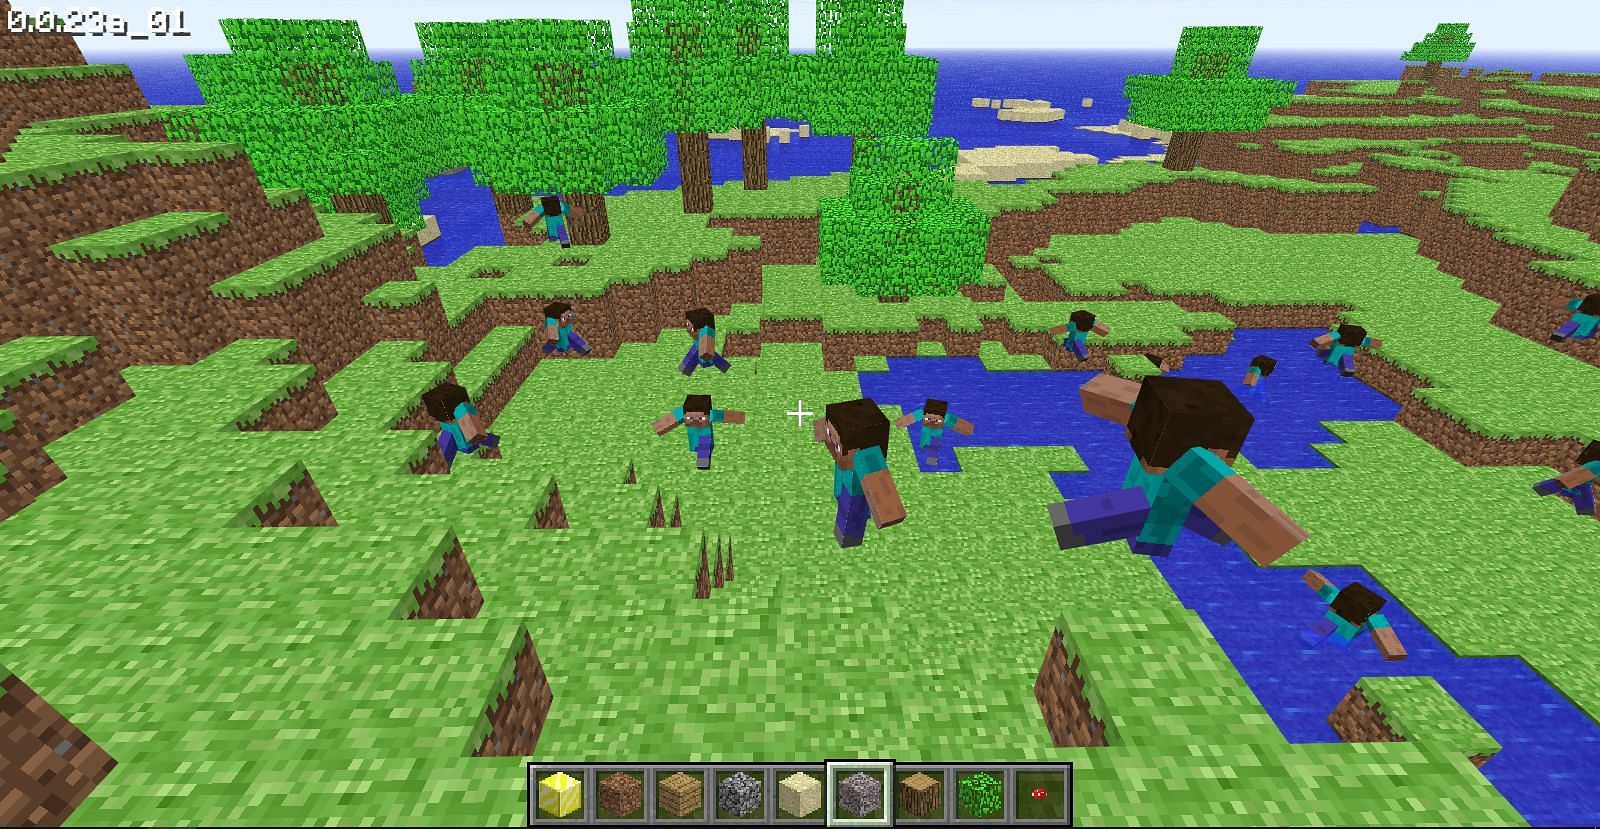 Multiple Steve mobs running (Image via Minecraft)